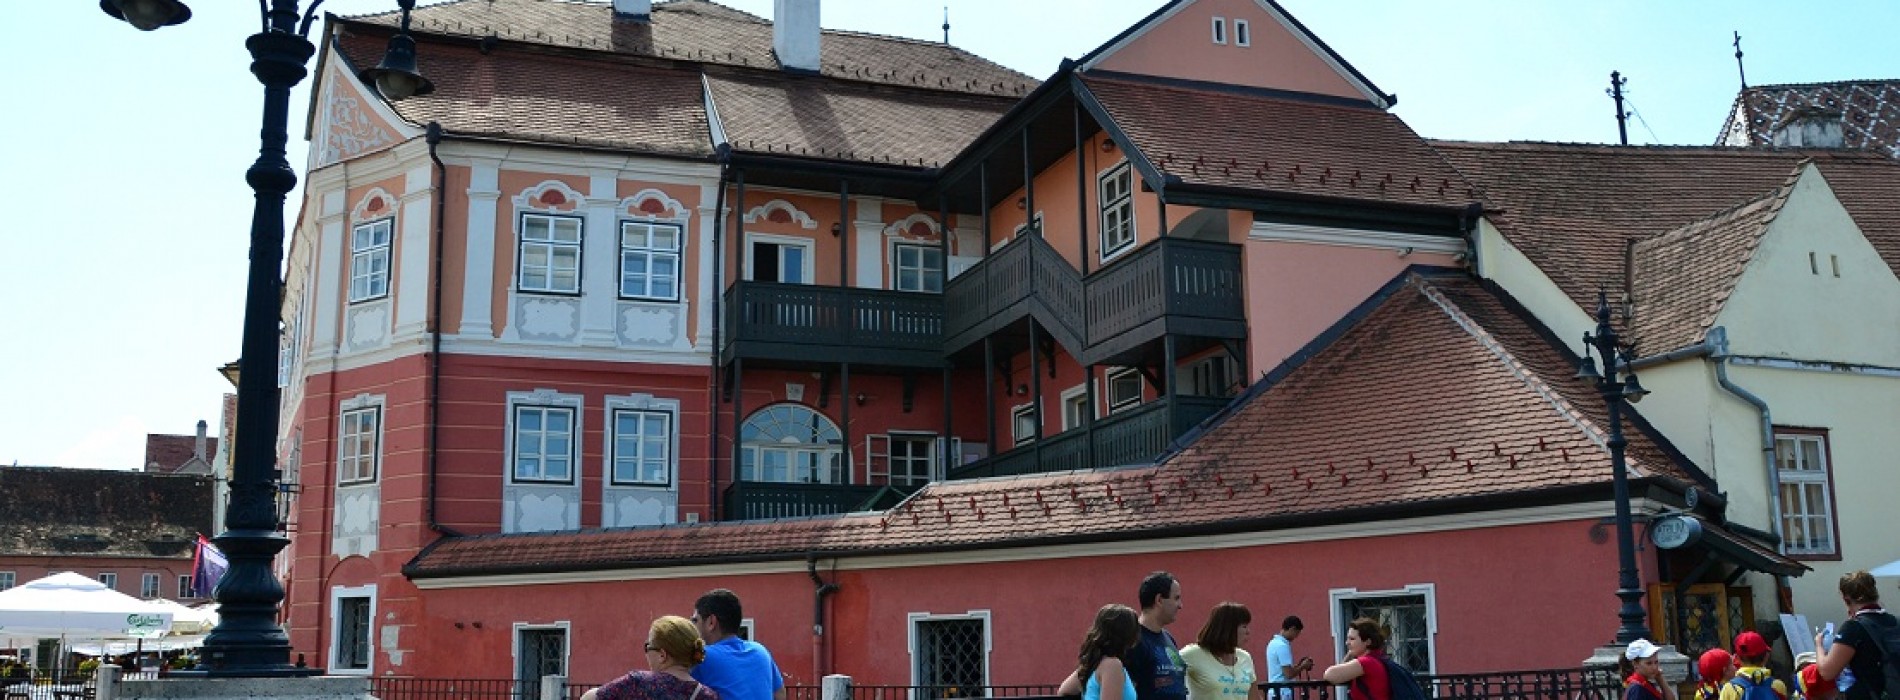 Sibiu inclus in top 10 cele mai idilice locuri din Europa